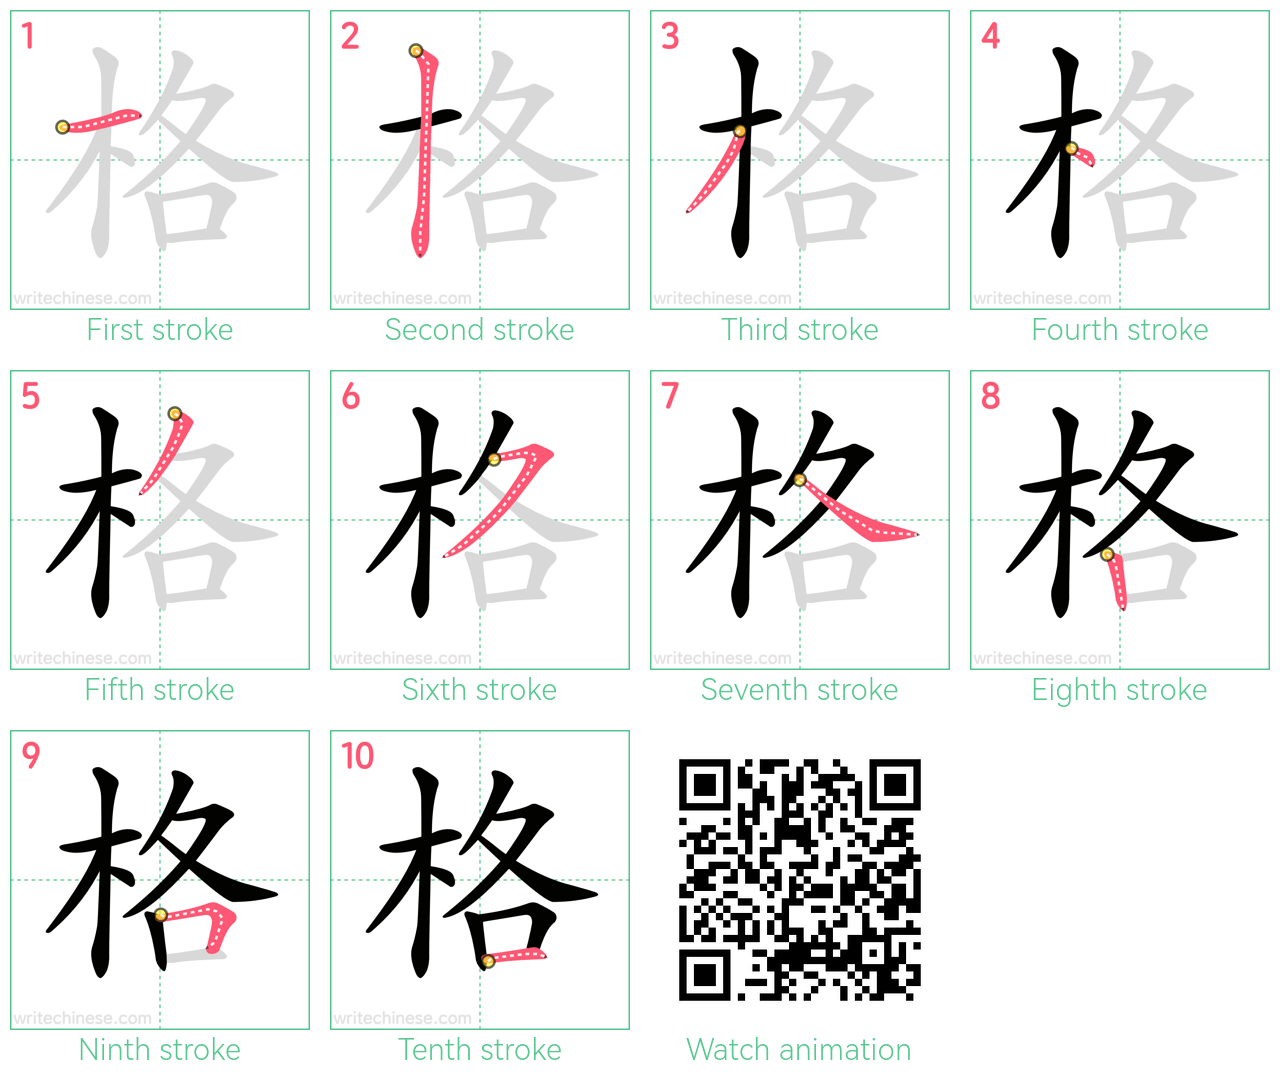 格 step-by-step stroke order diagrams